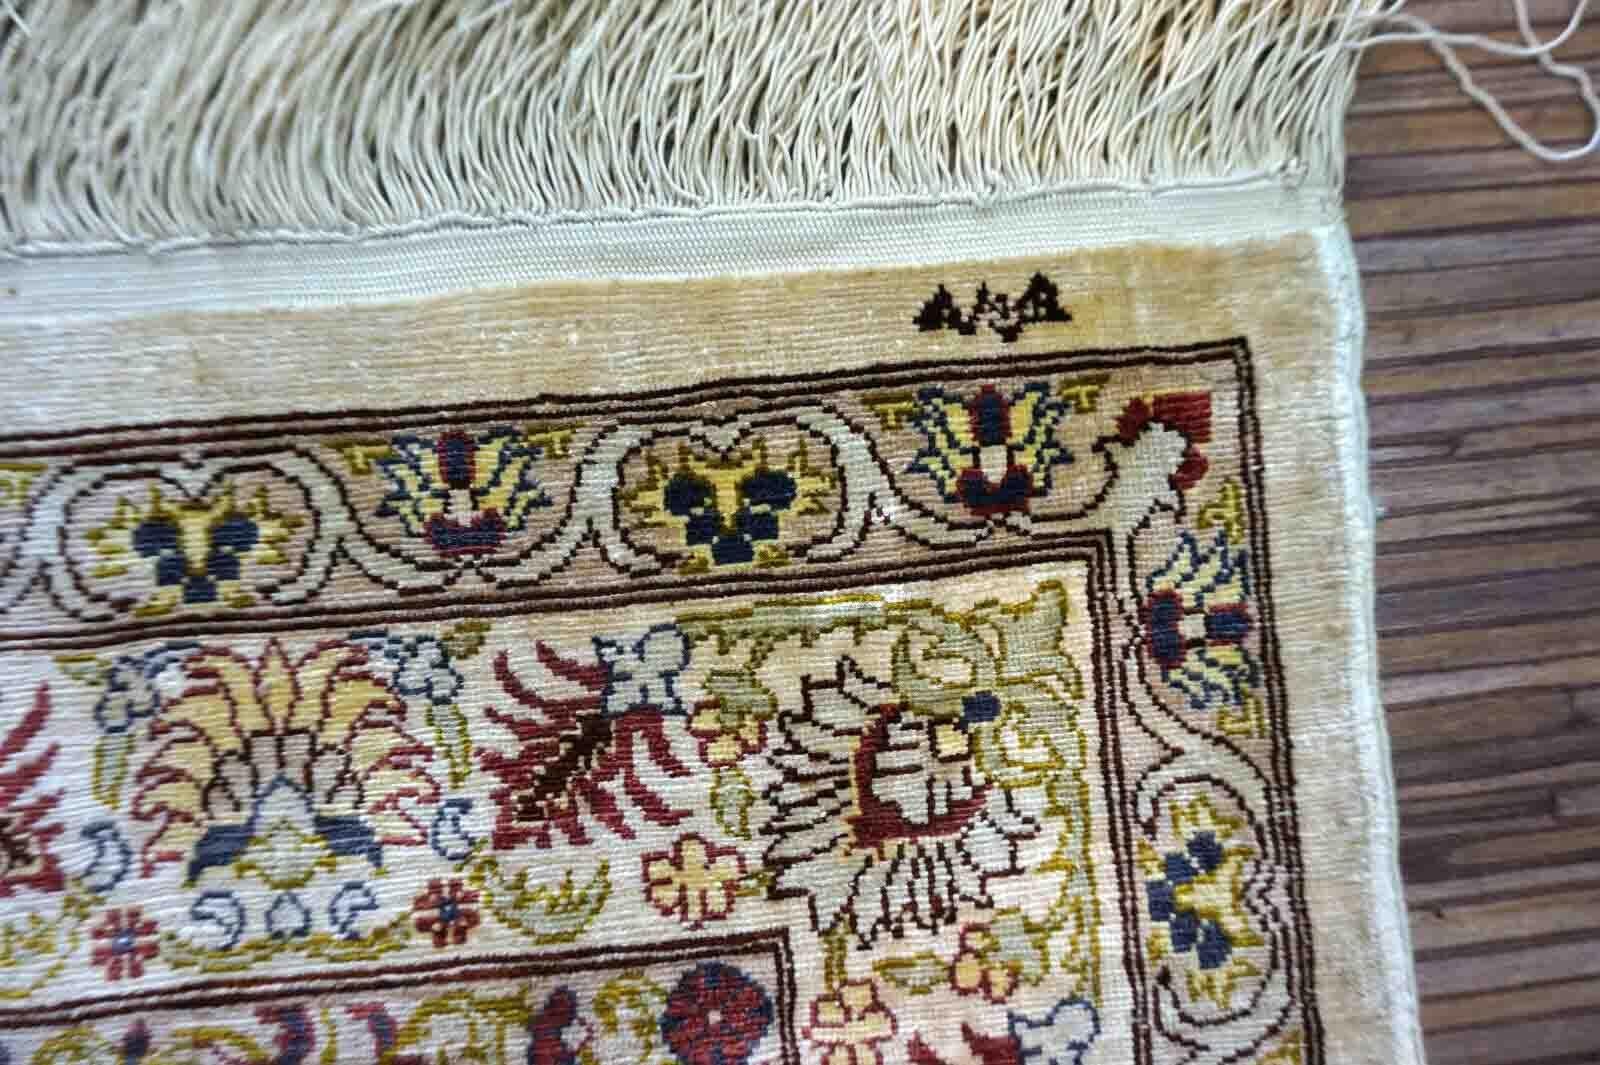 Handgefertigter türkischer Hereke-Teppich aus Naturseide. Der Teppich stammt aus dem Ende des 20. Jahrhunderts und ist in gutem Originalzustand.

-Zustand: original gut,

-Umgebung: 1970er Jahre,

-Größe: 1,8' x 2,9' (55cm x